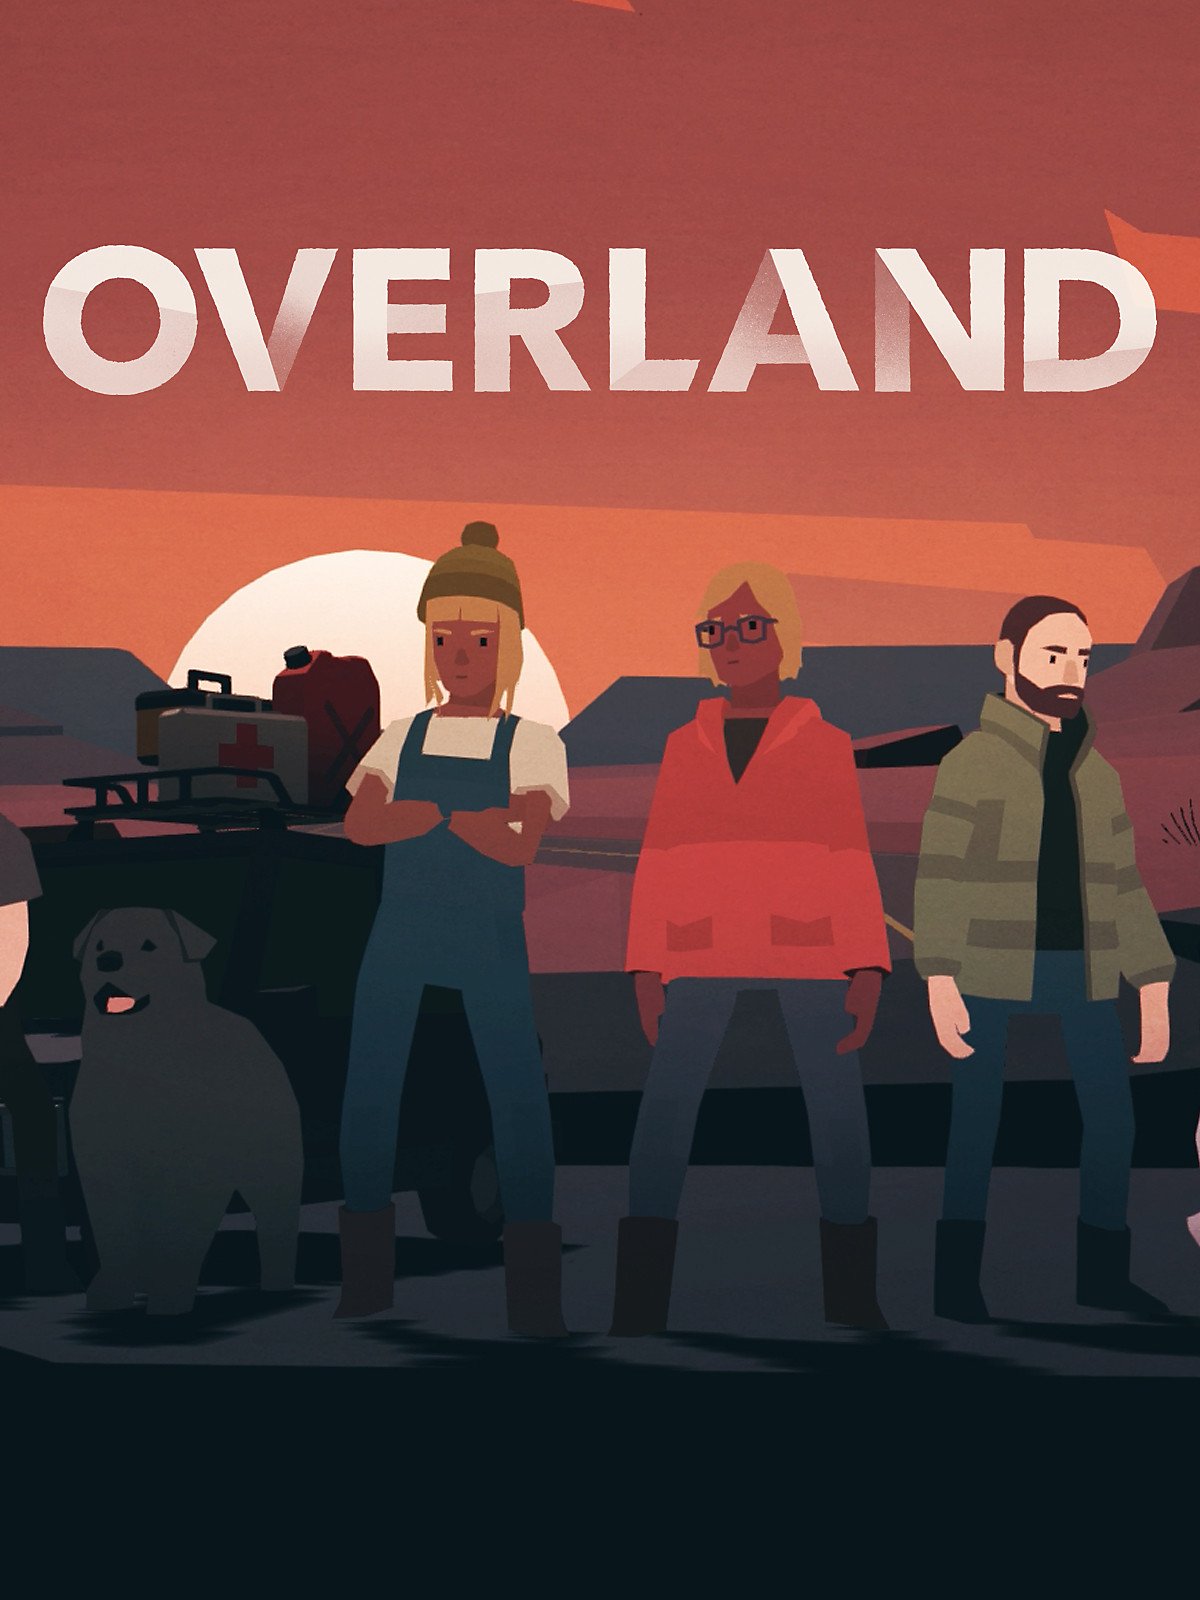 Cover Overland (build 840) [GOG] (2019) download torrent License